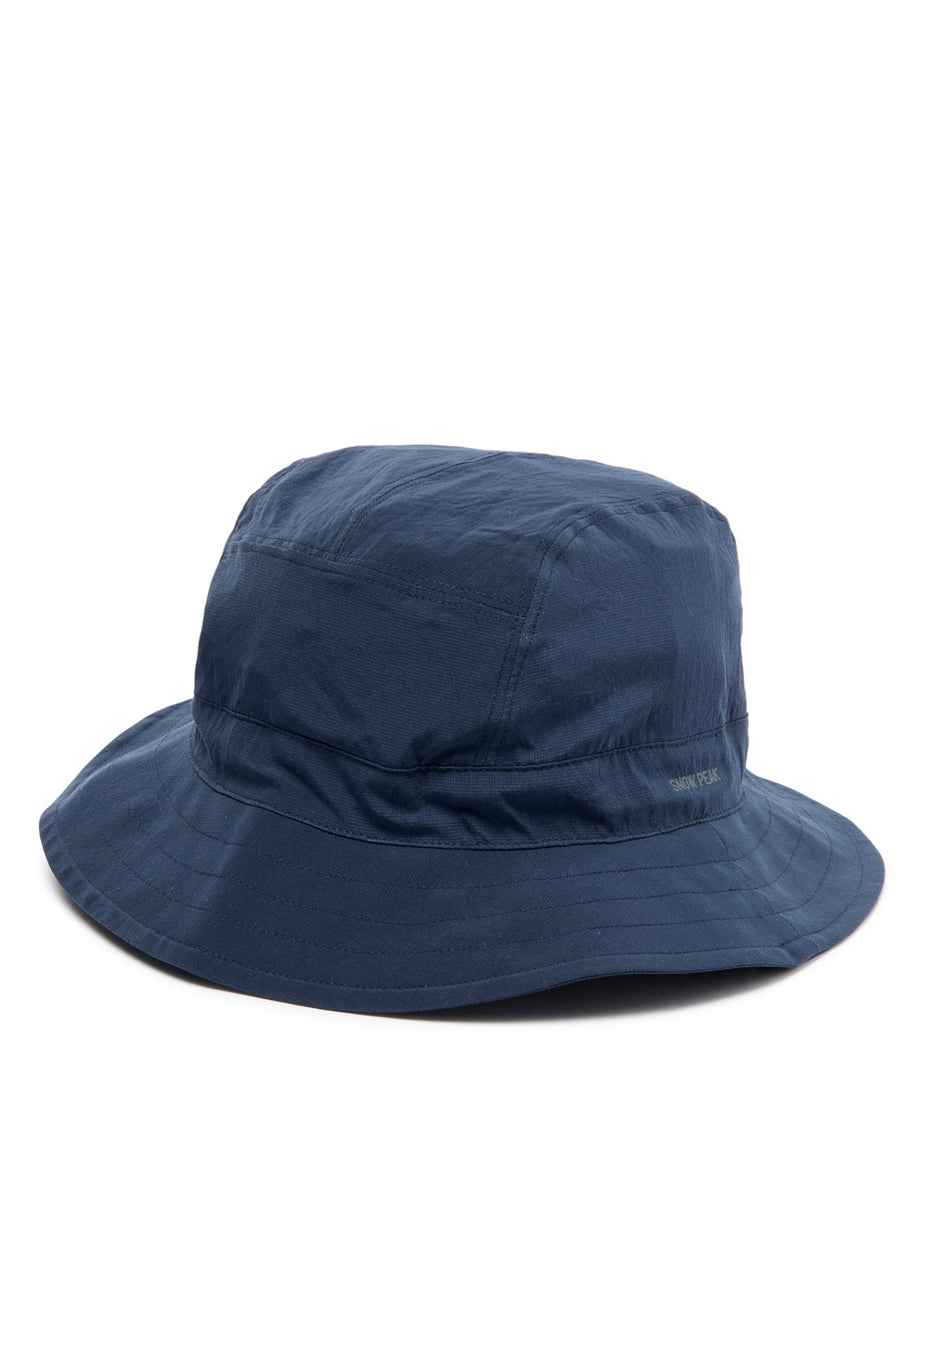 Snow Peak Breathable Quick Dry Hat - Navy